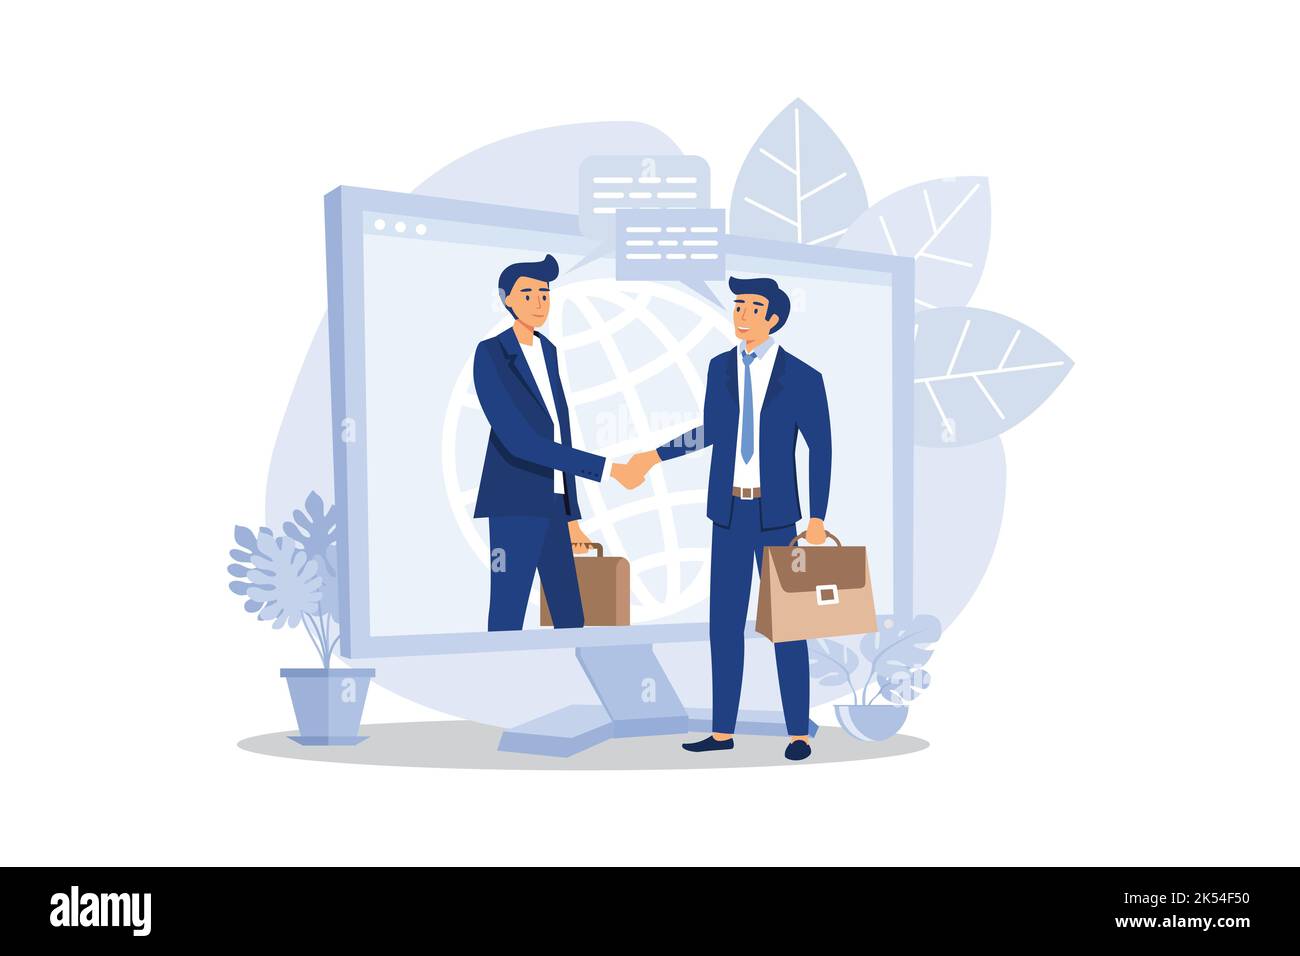 Online Abschluss der Transaktion. Die Eröffnung eines neuen Startups. Business-Handshake, per Telefon und Laptop. Flaches Design moderne Illustration Stock Vektor